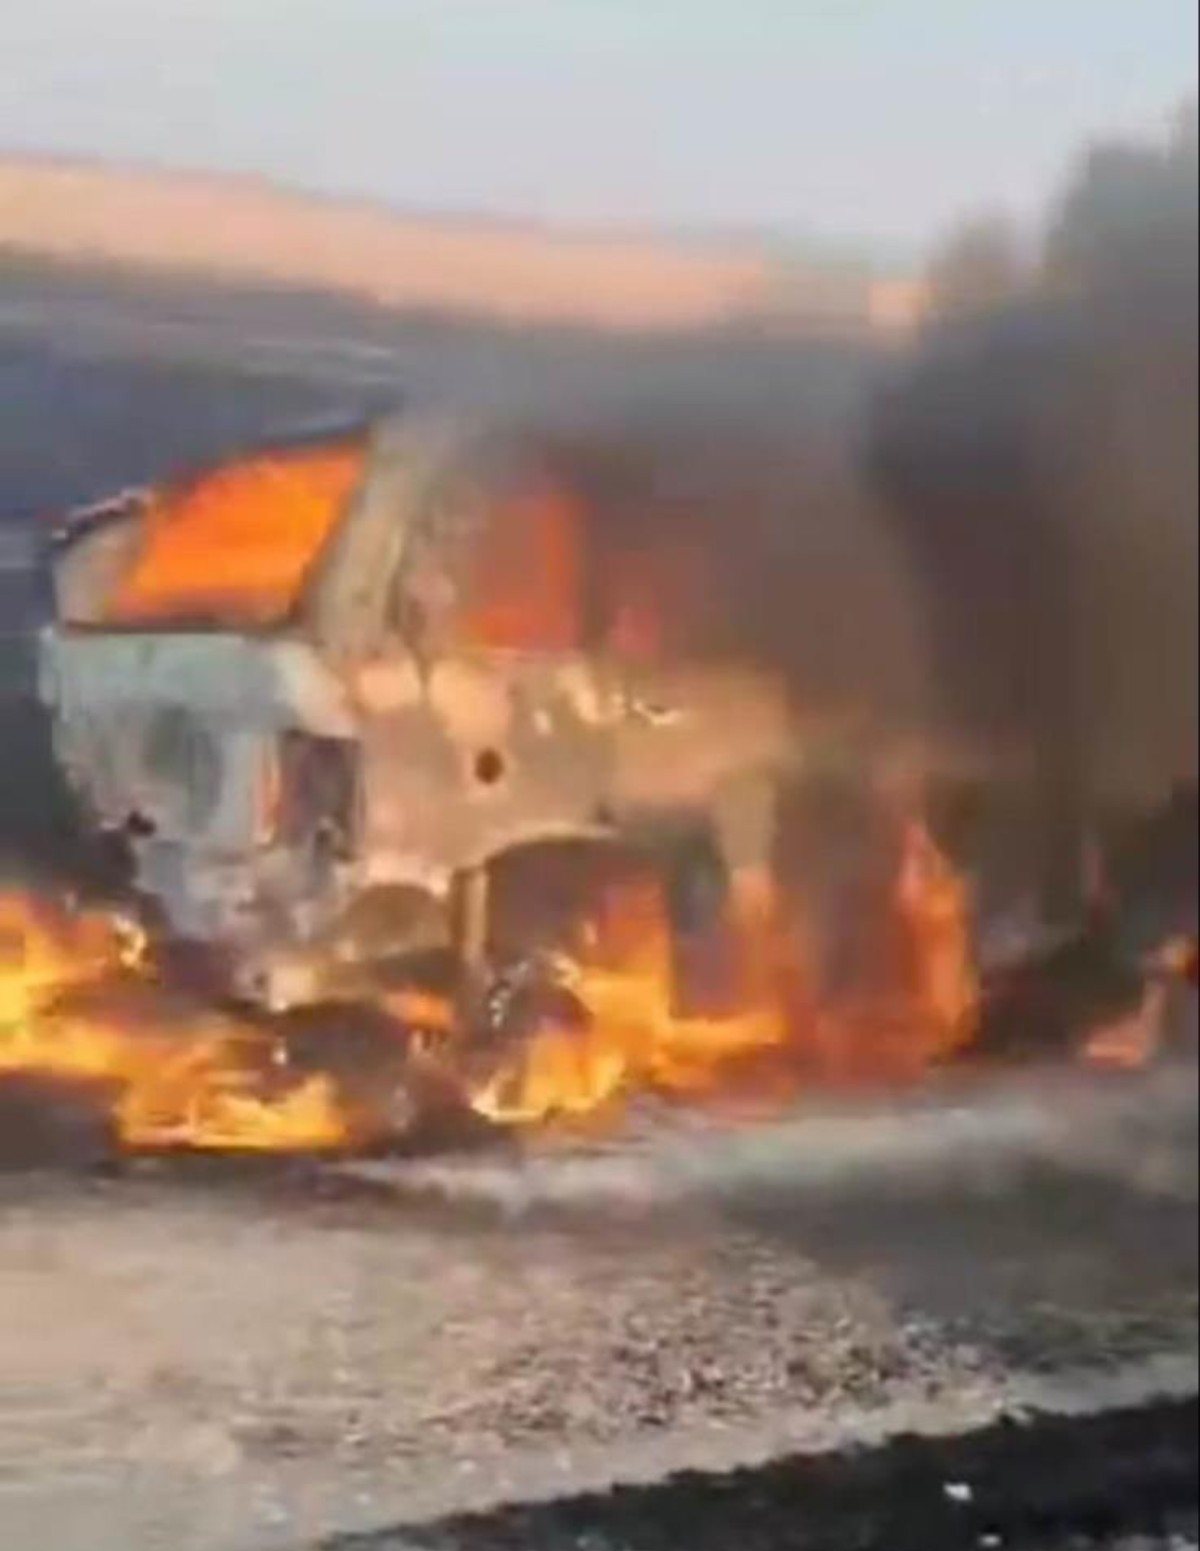 Konya'da traktörle çarpışan otomobil alev topuna dönüştü